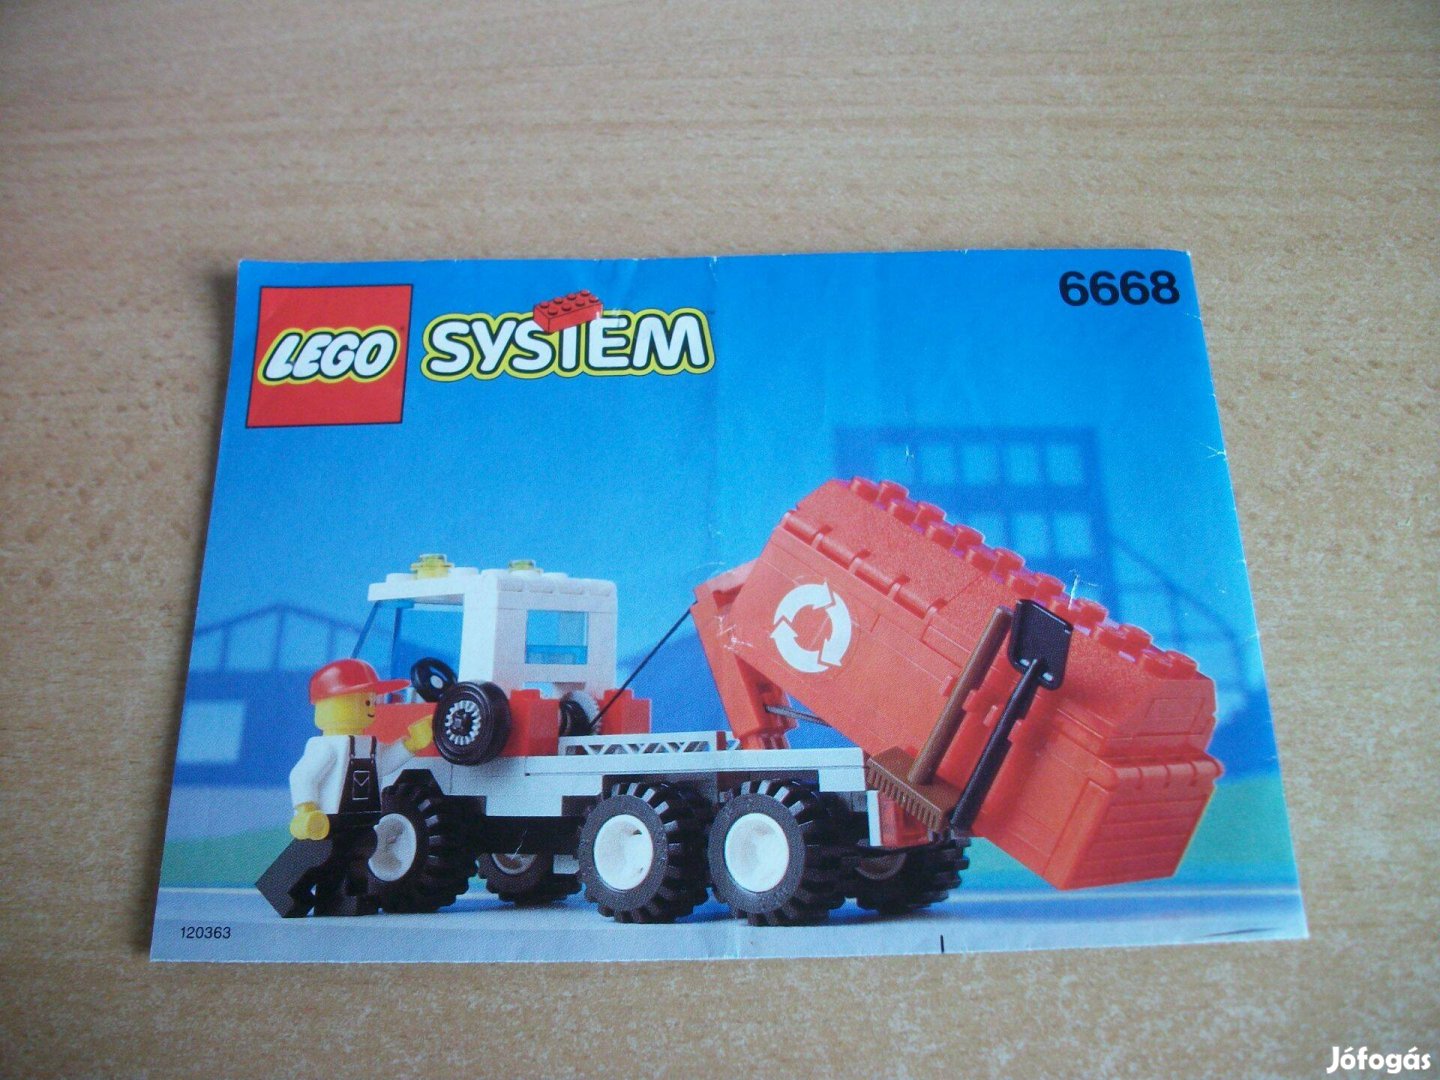 LEGO 6668 készlet